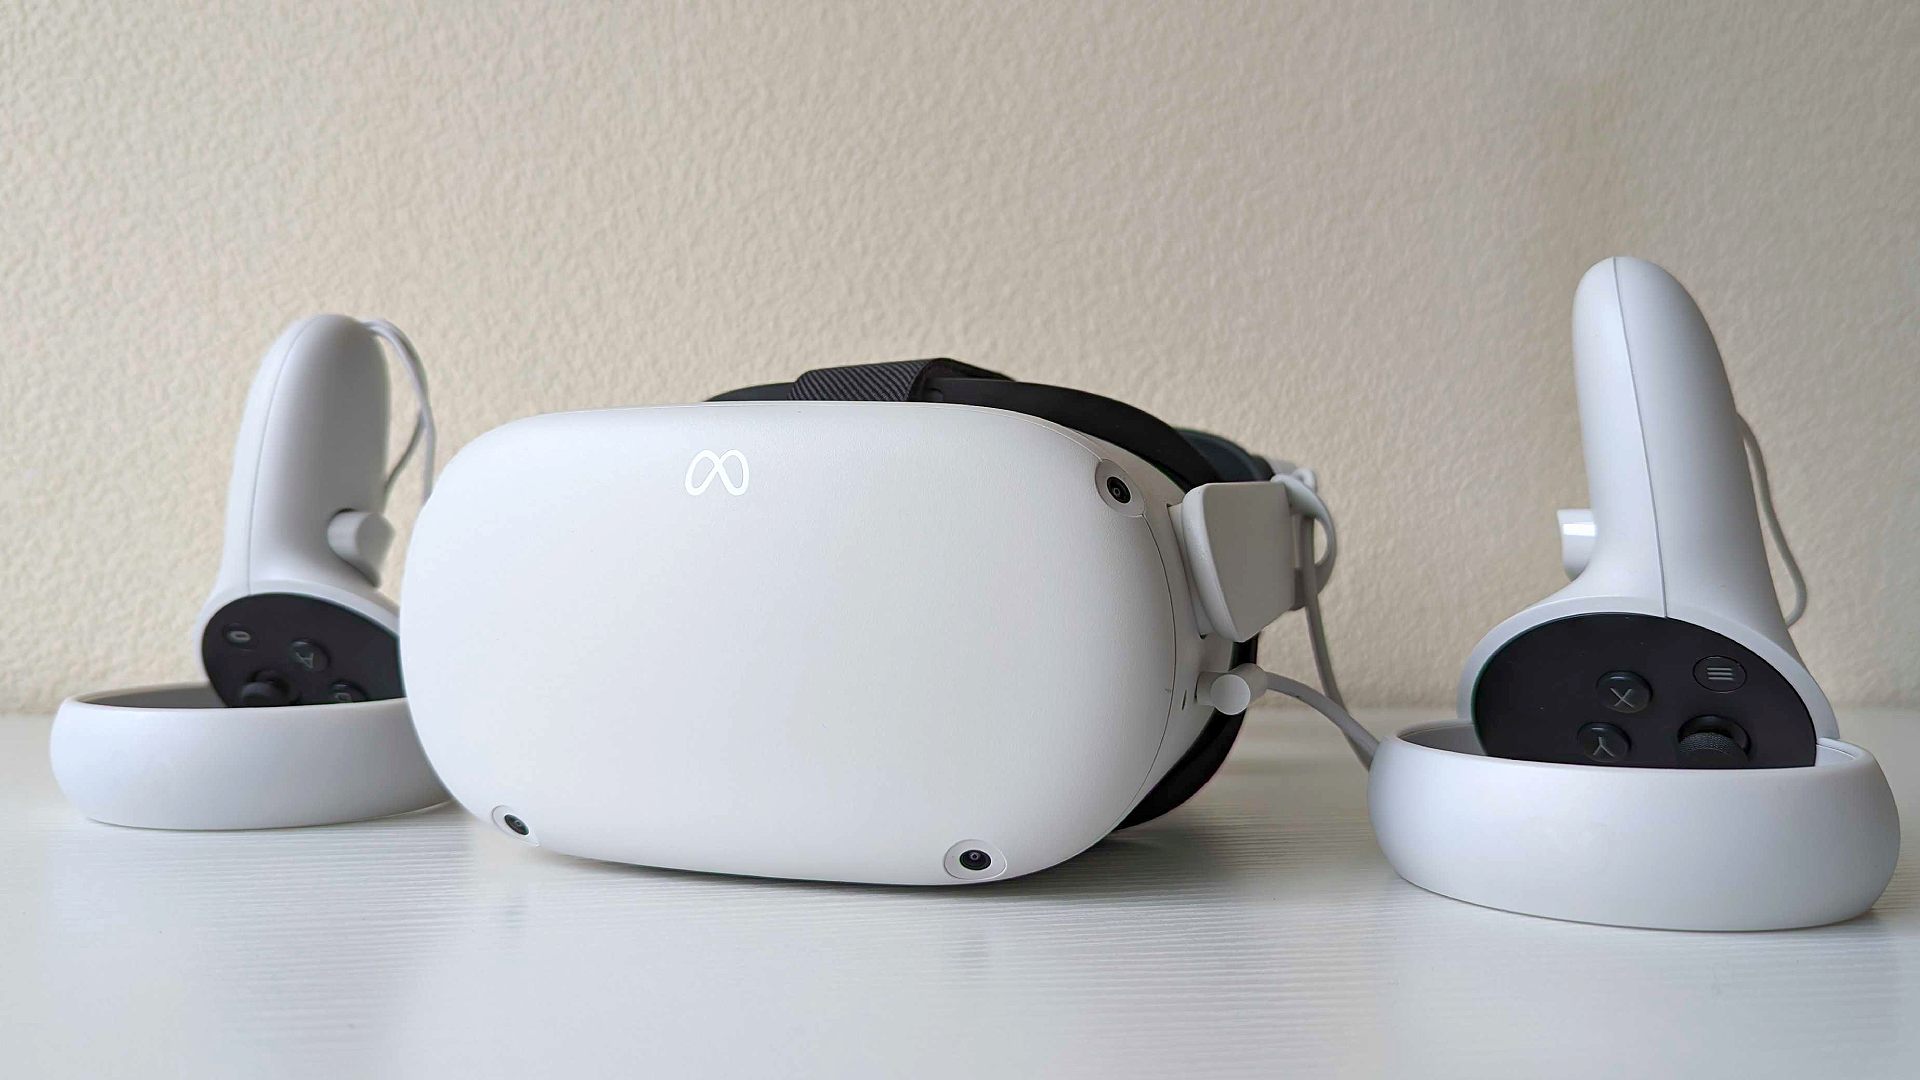 ชุดหูฟัง VR ที่ดีที่สุด: Meta Quest 2 พร้อมคอนโทรลเลอร์บนพื้นผิวสีขาว